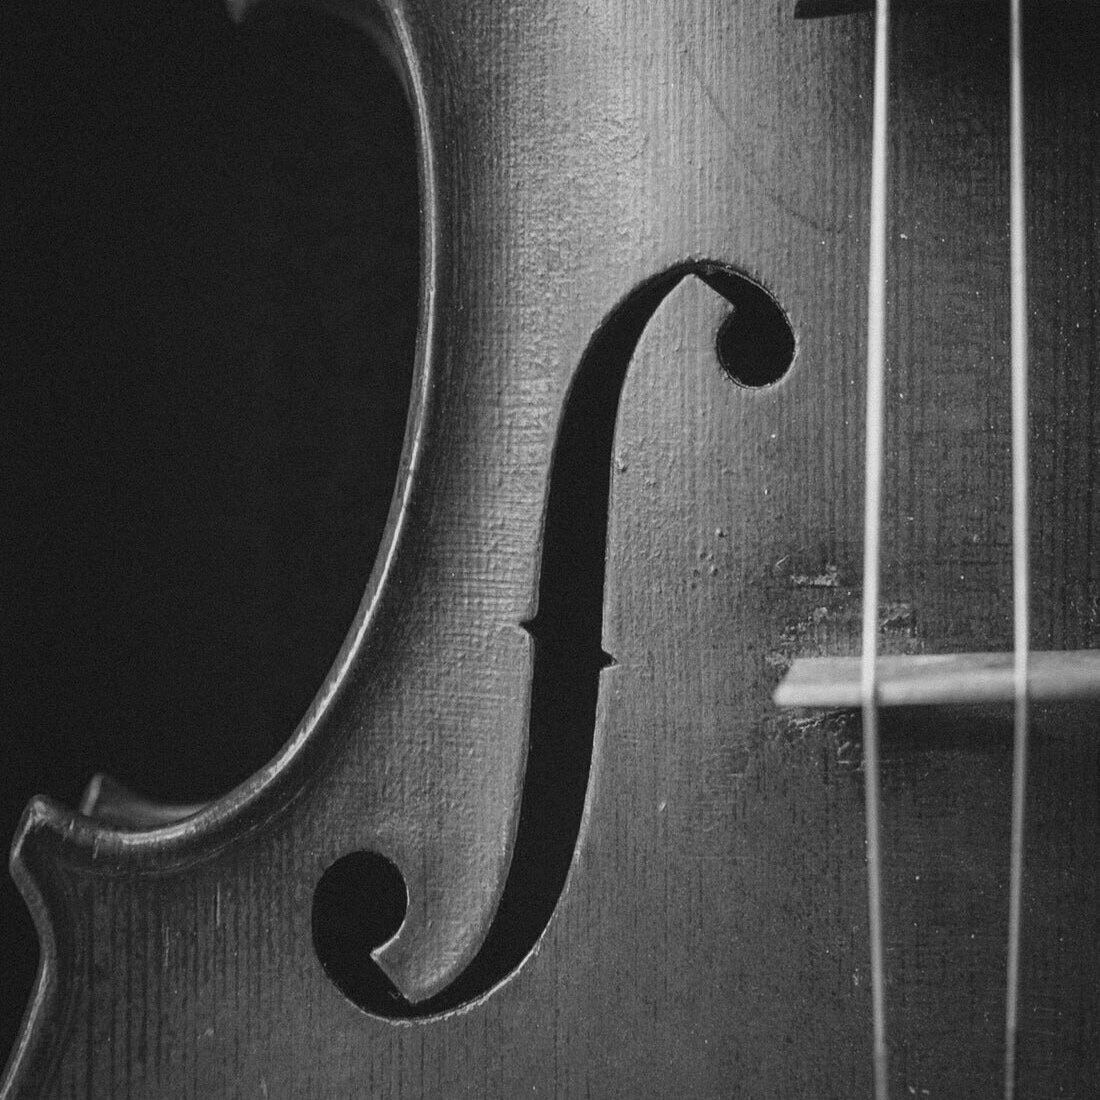 Cello coming soon...